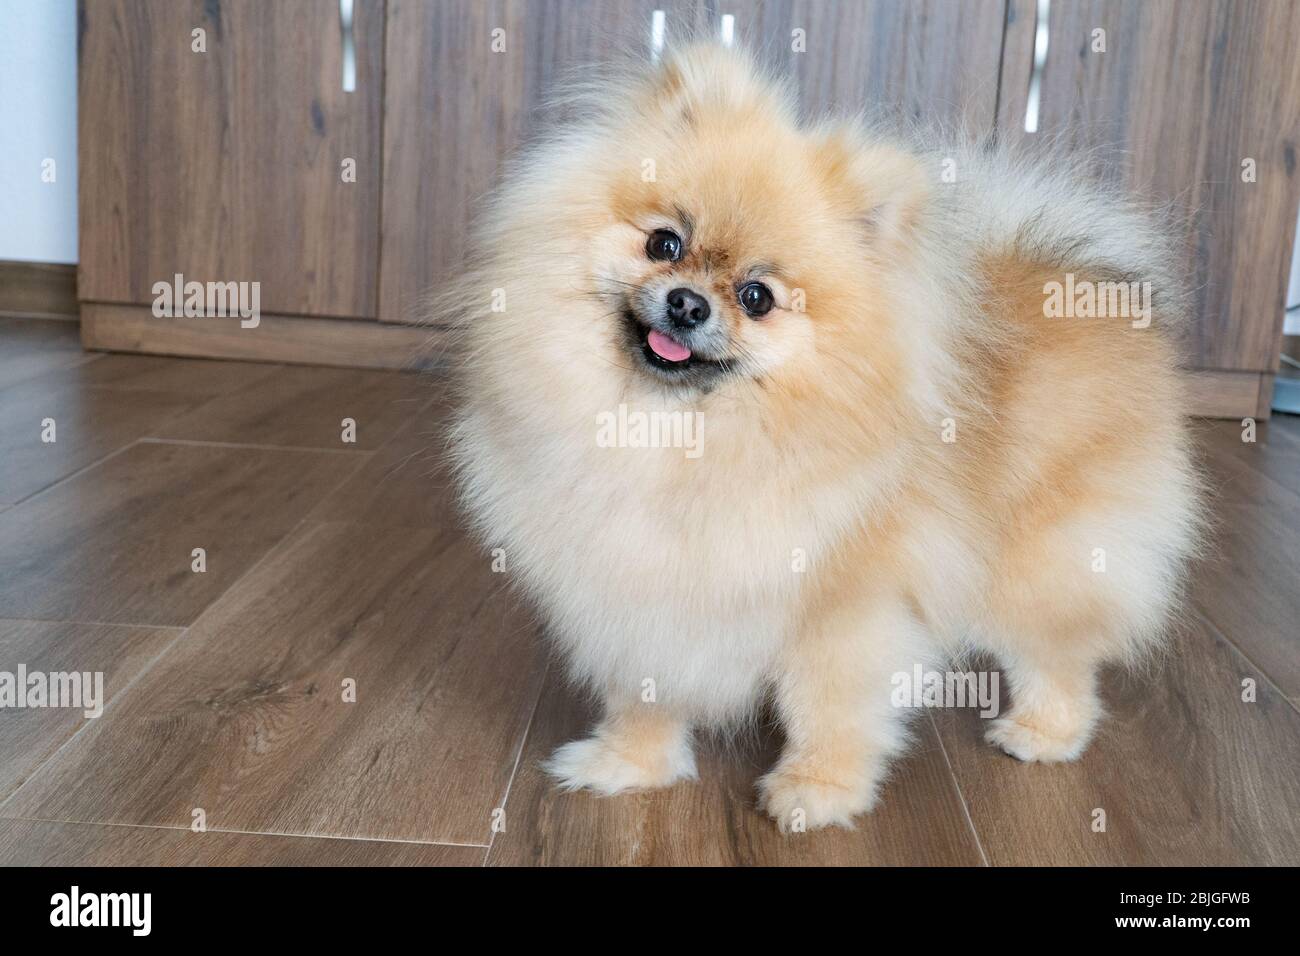 Portrait of a little fluffy Pomeranian puppy. Smiling pomeranian dog. Stock Photo